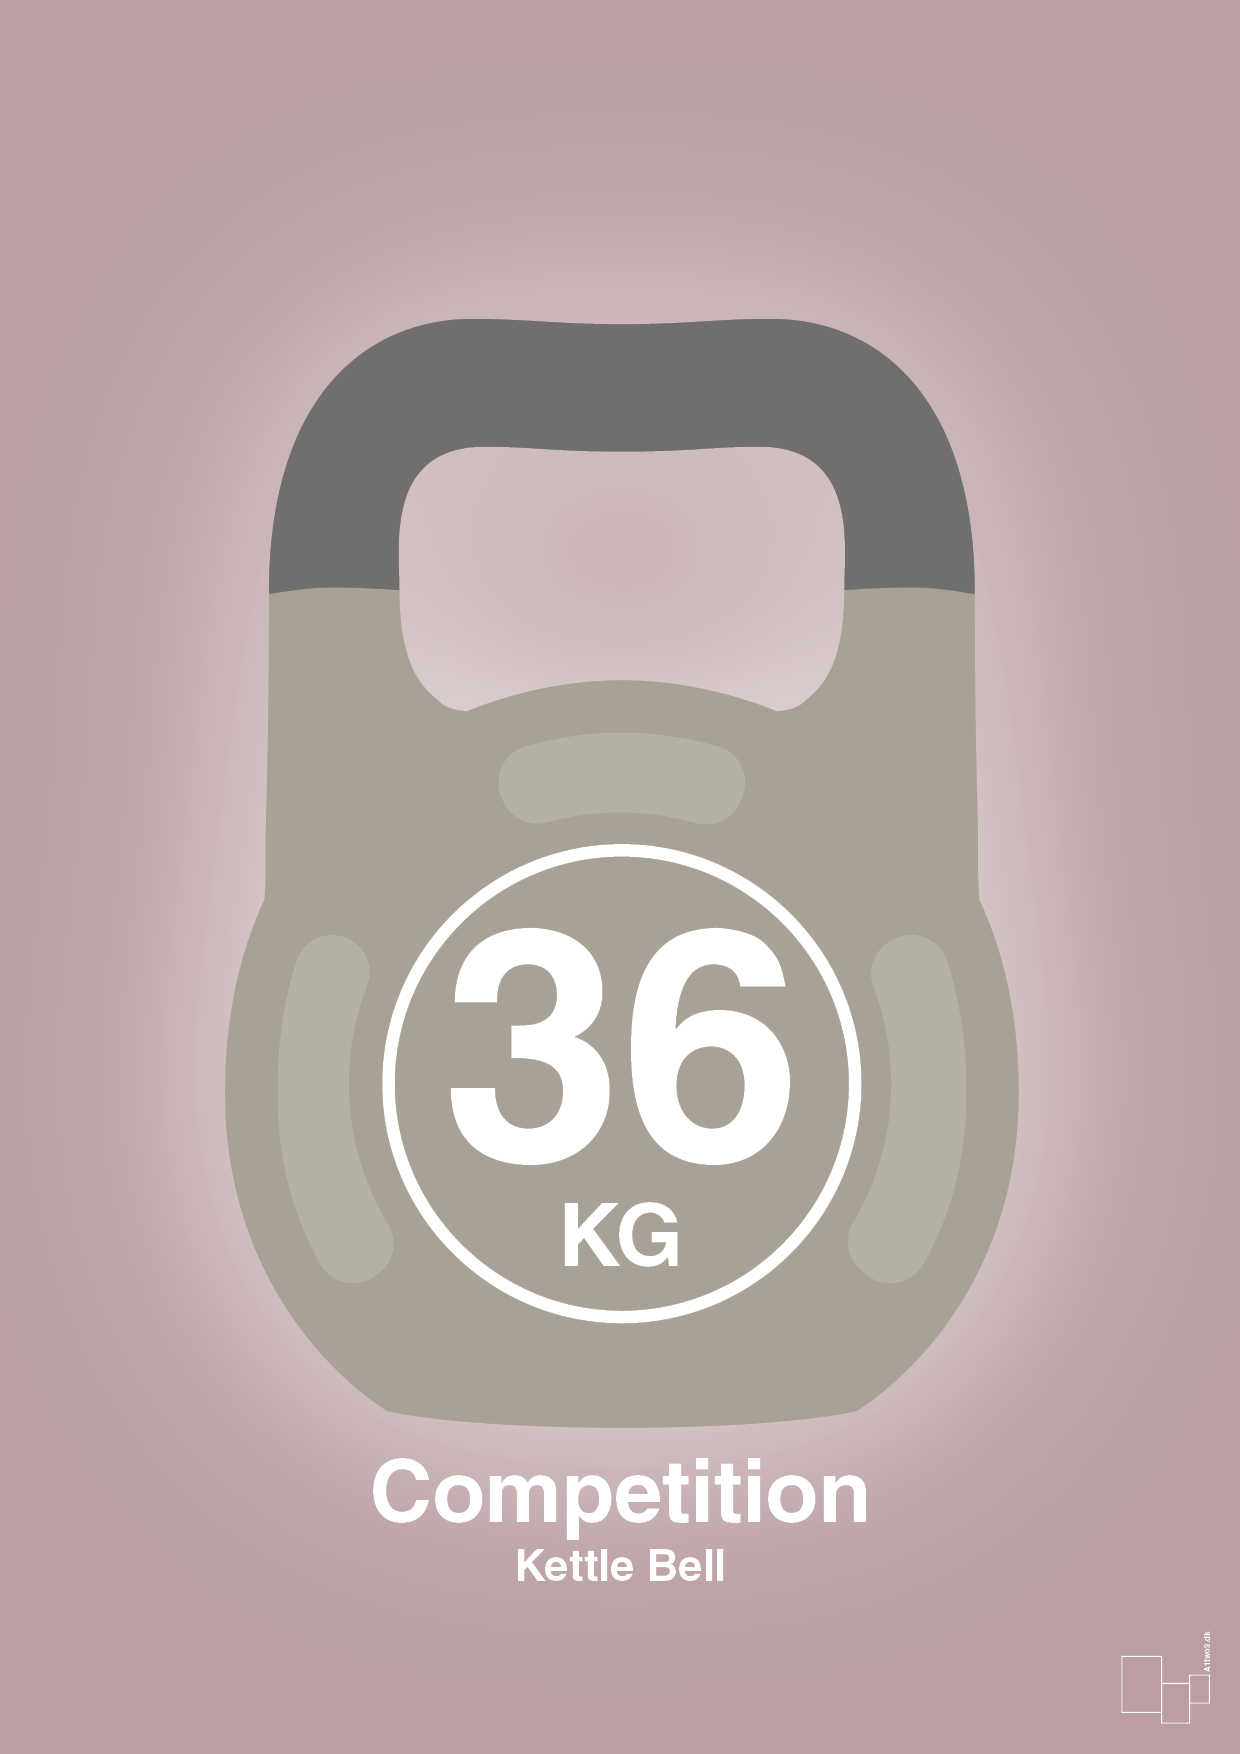 kettle bell 36 kg - competition color - Plakat med Grafik i Light Rose